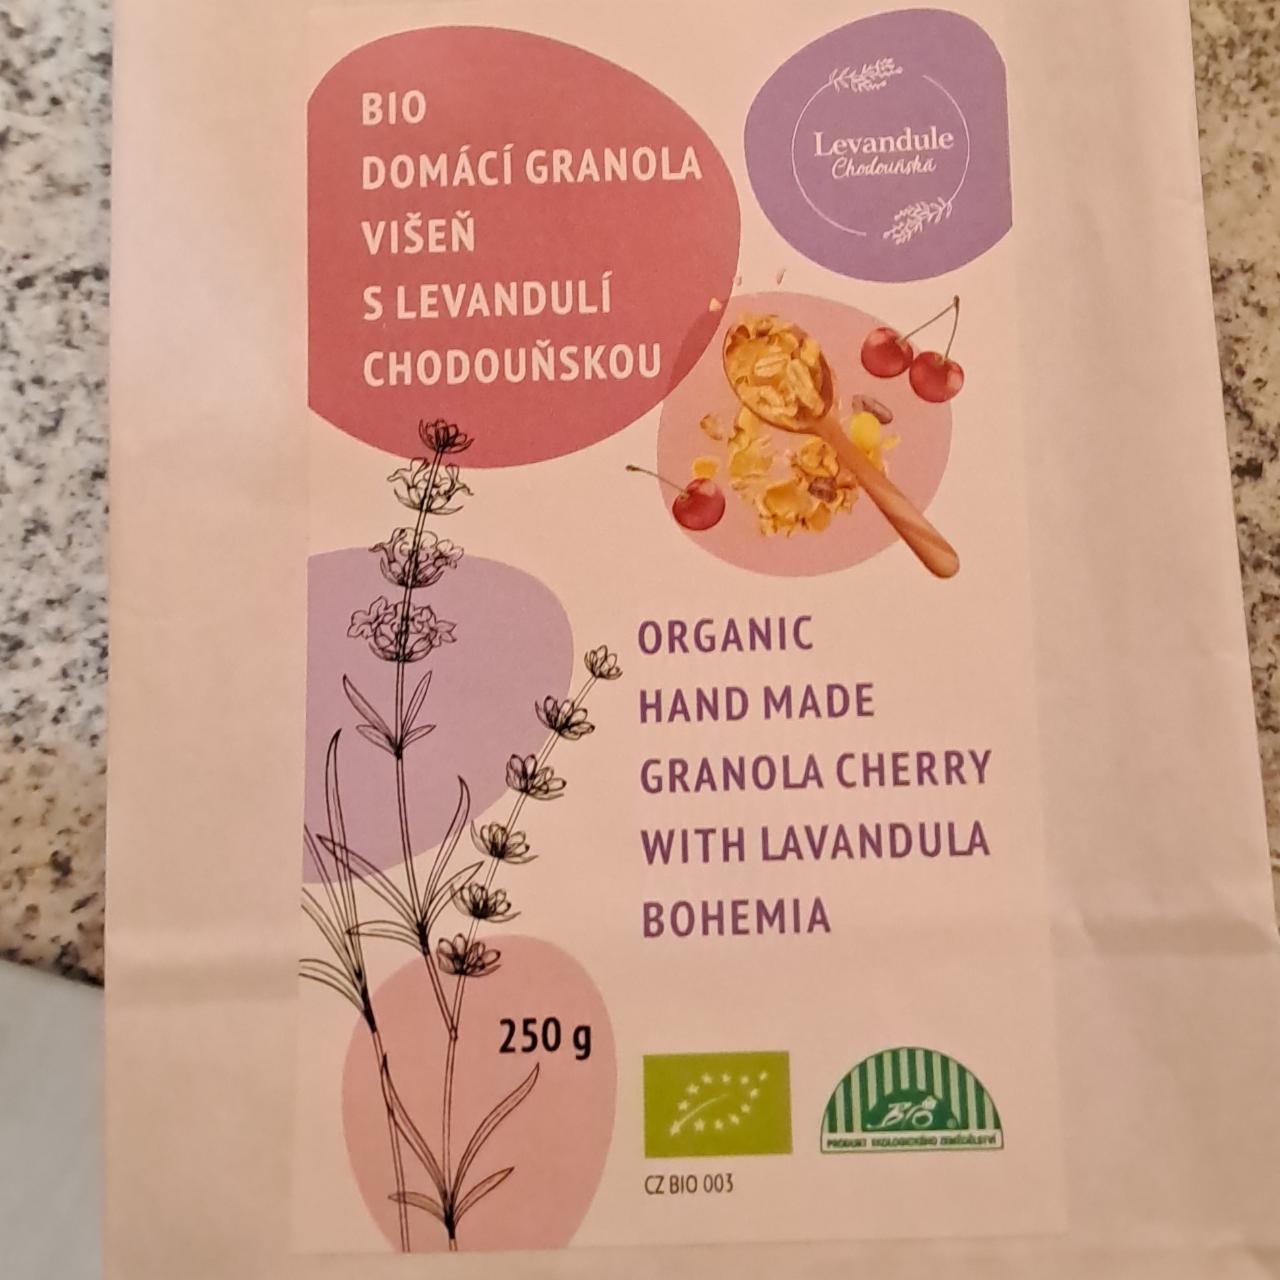 Fotografie - Bio domácí granola višeň s levandulí chodouňskou Levandule chodouňsko